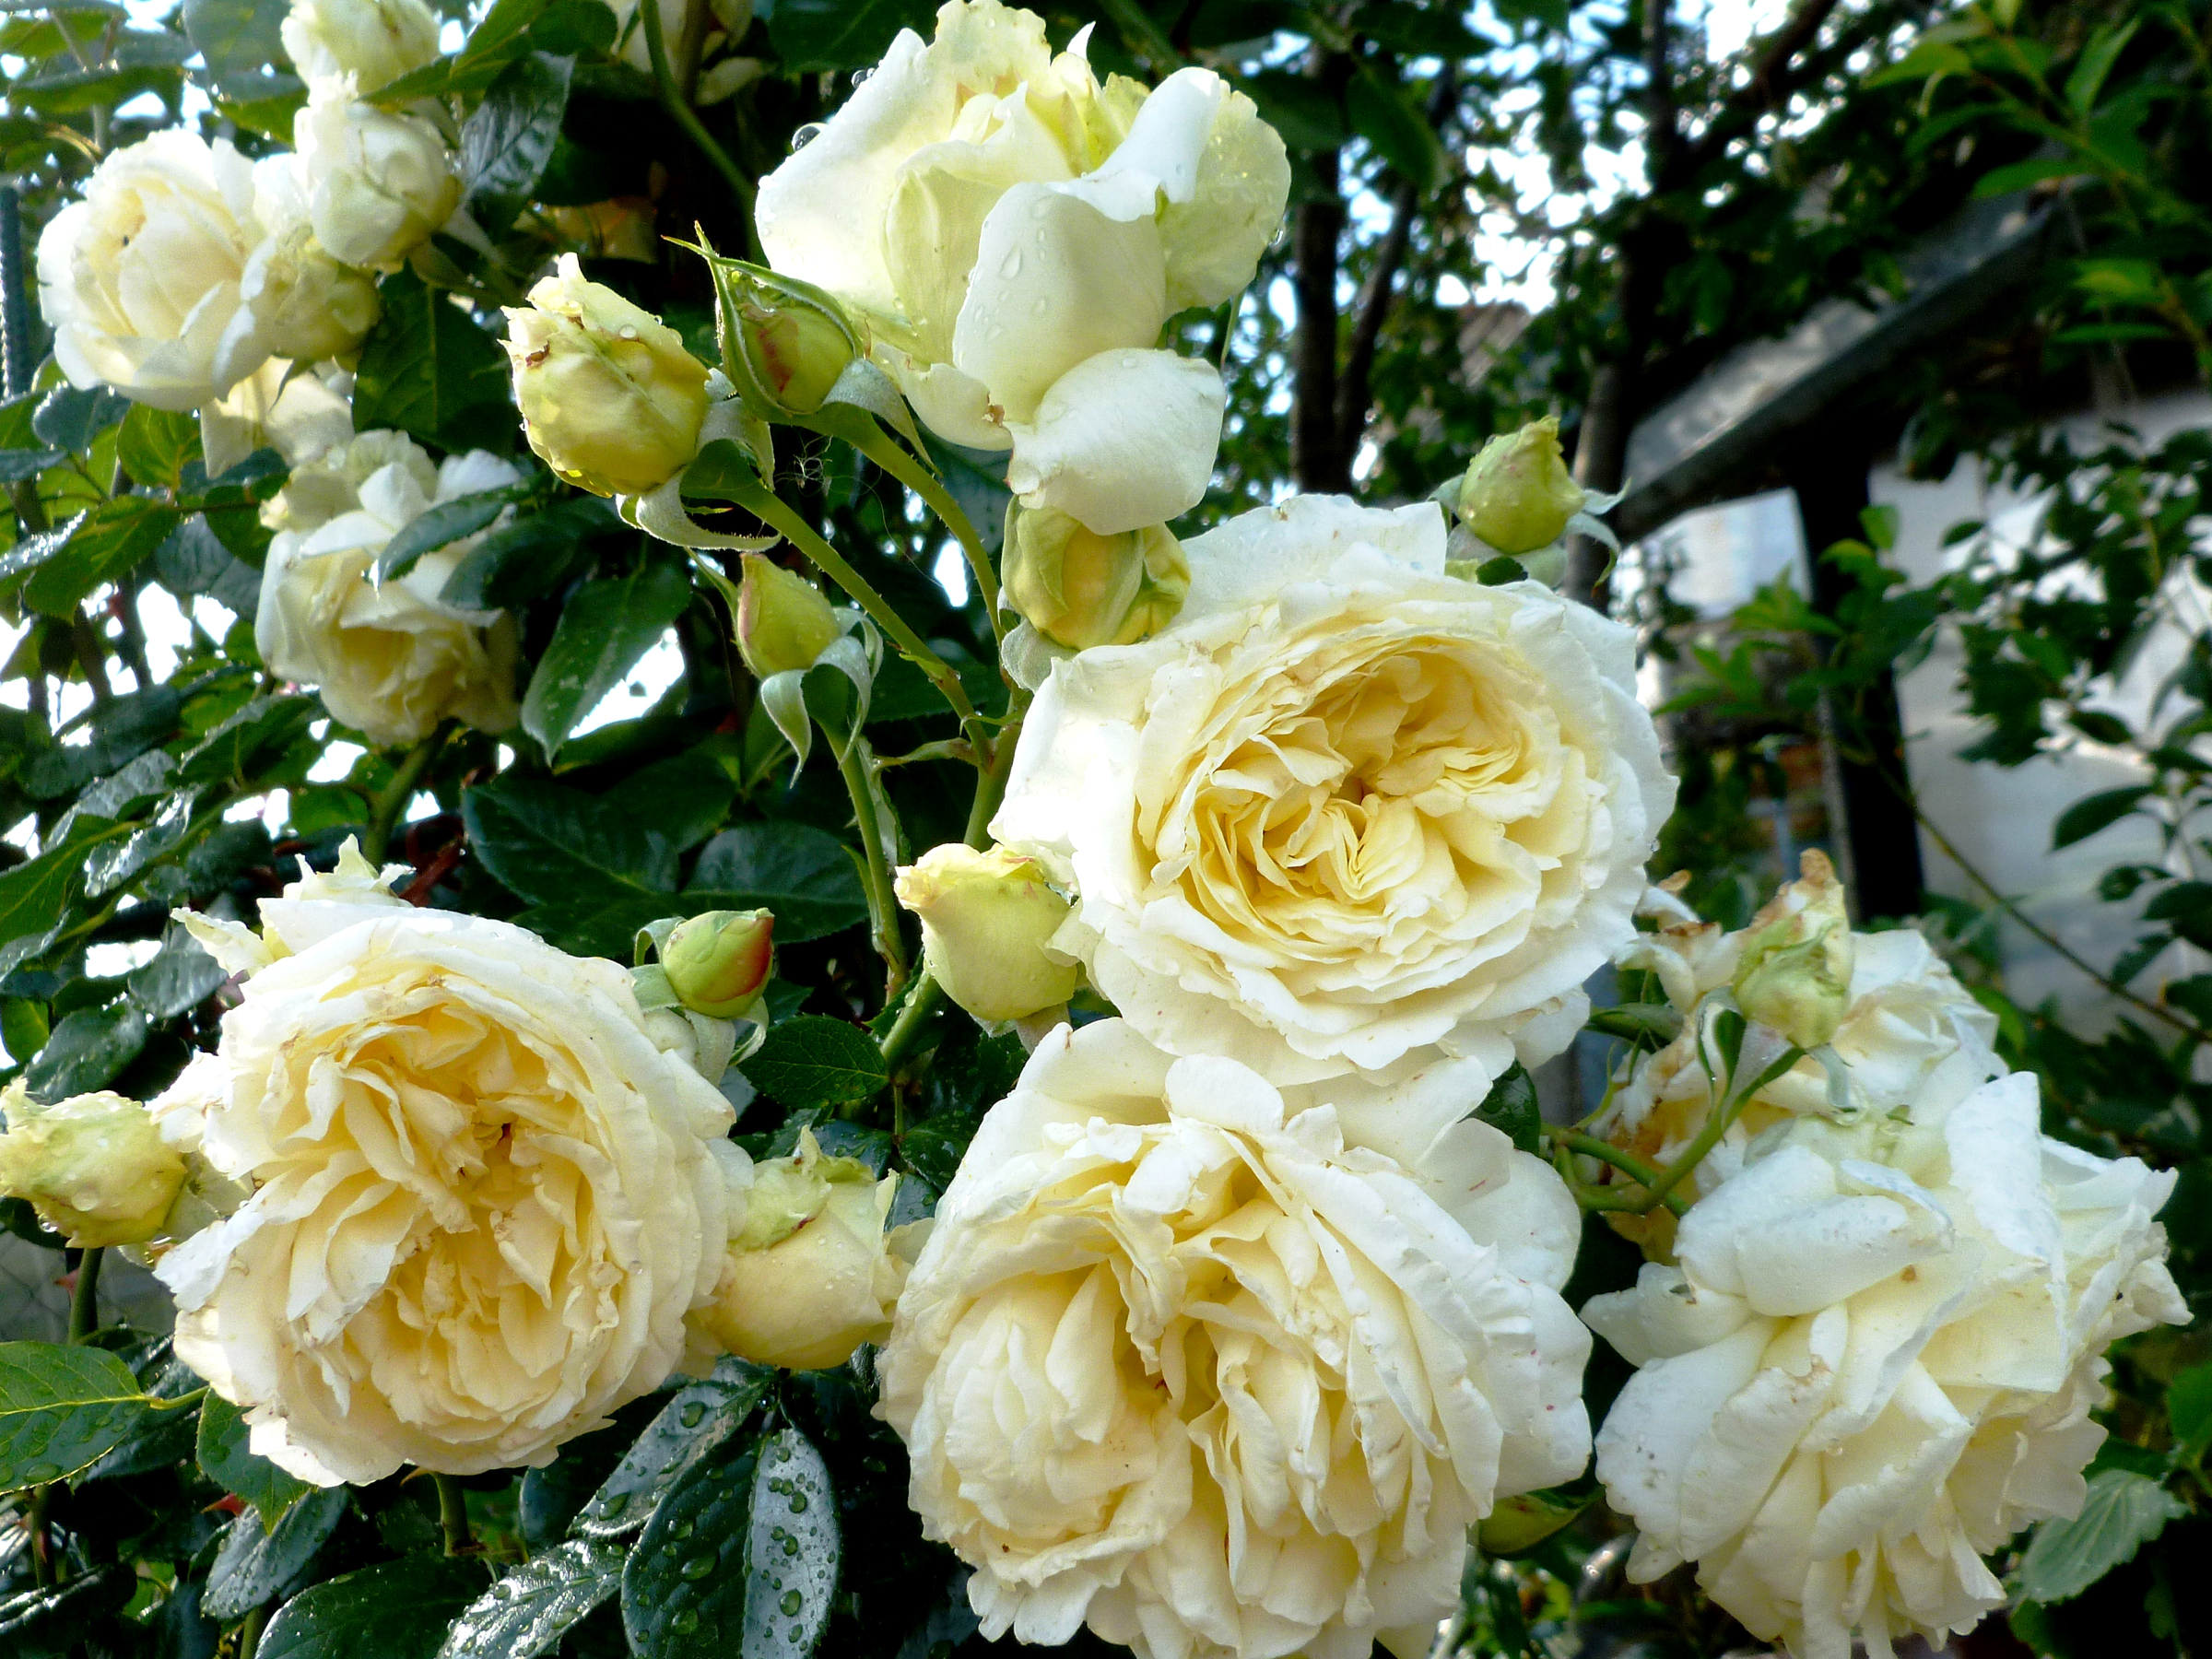 クリームローズ壁紙,花,ローズ,庭のバラ,開花植物,ジュリア・チャイルド・ローズ